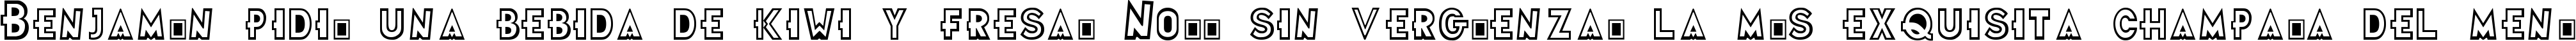 Пример написания шрифтом Futurama Title Font текста на испанском